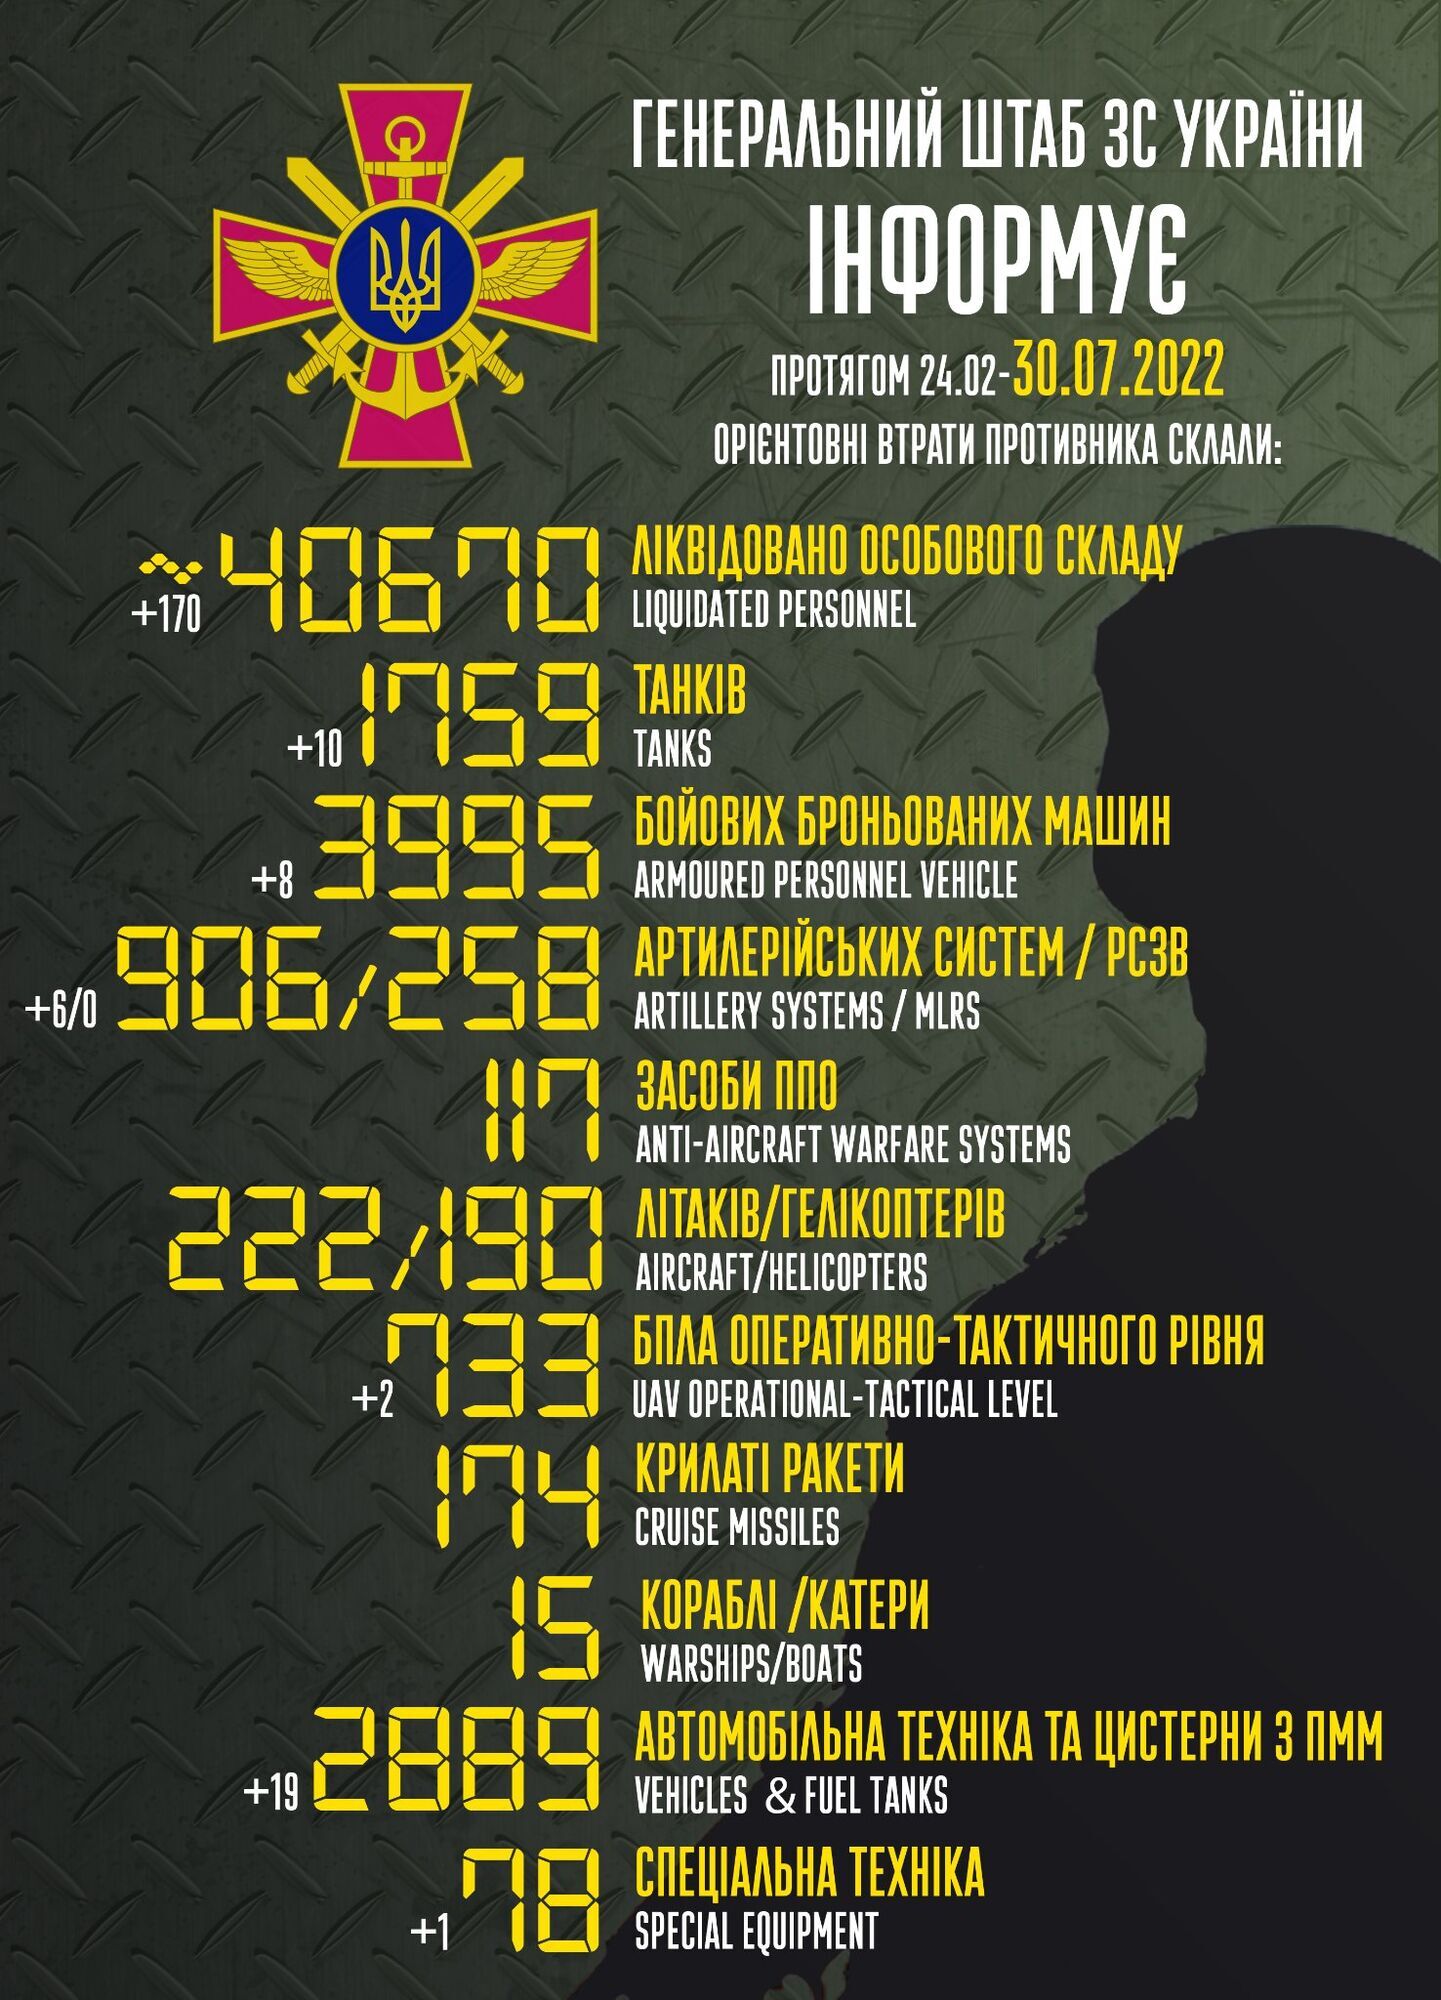 Втрати Росії у війні проти України сягнули 40 тис. 670 осіб